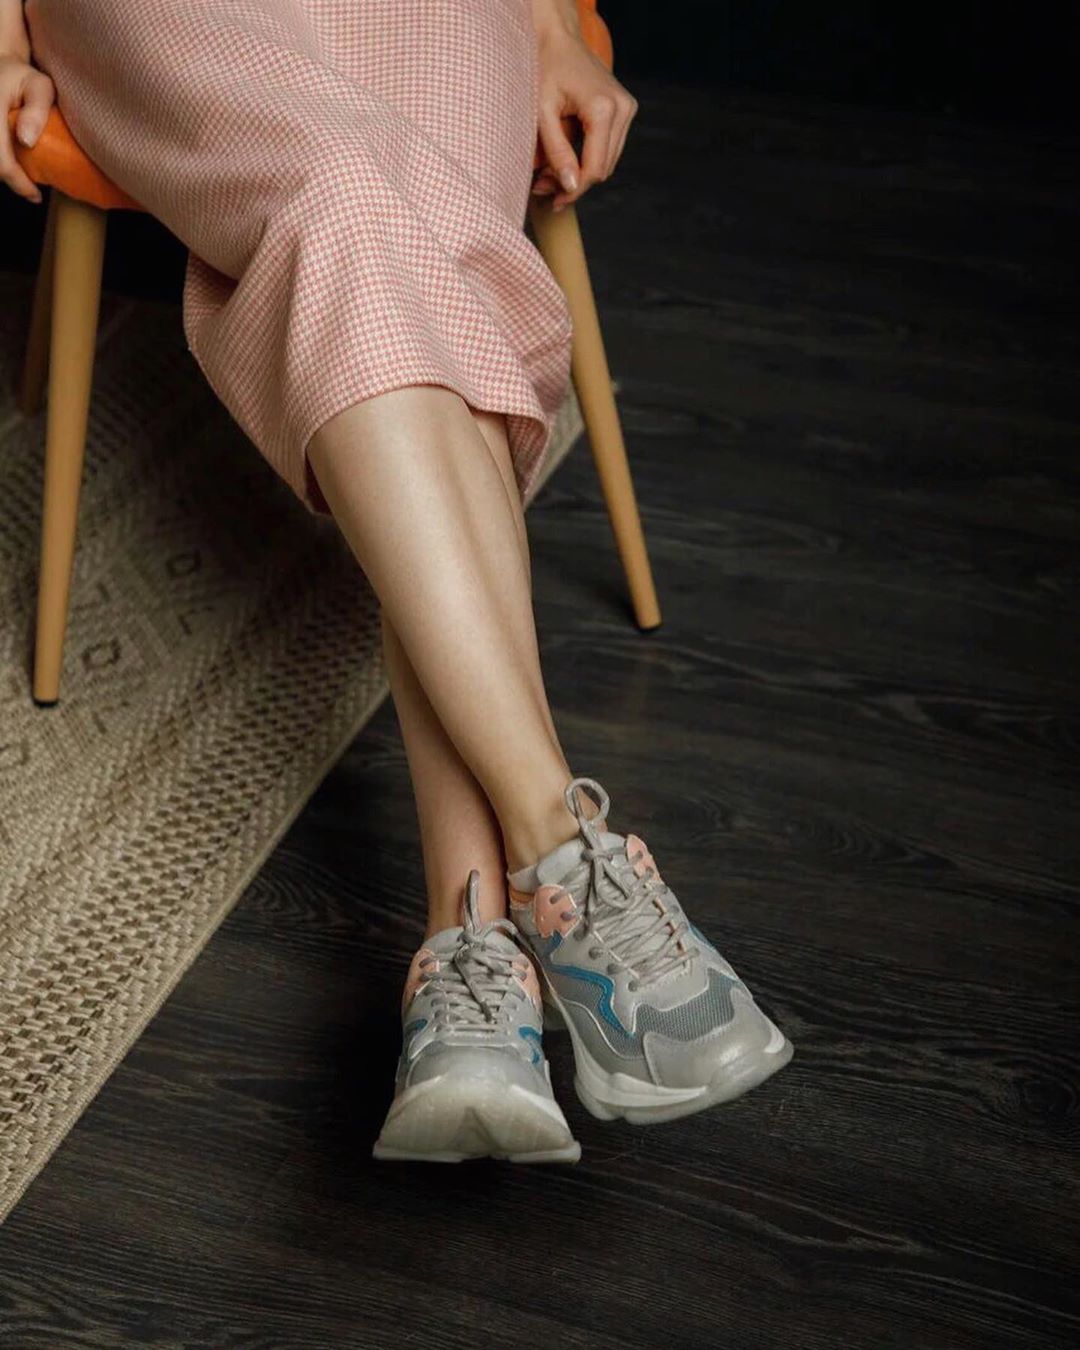 TERVOLINA - За свою более чем столетнюю историю кроссовки успели завоевать всеобщее признание и статус самой популярной в мире обуви.
 
Первые модели изготавливались с резиновой подошвой и тканевым ве...